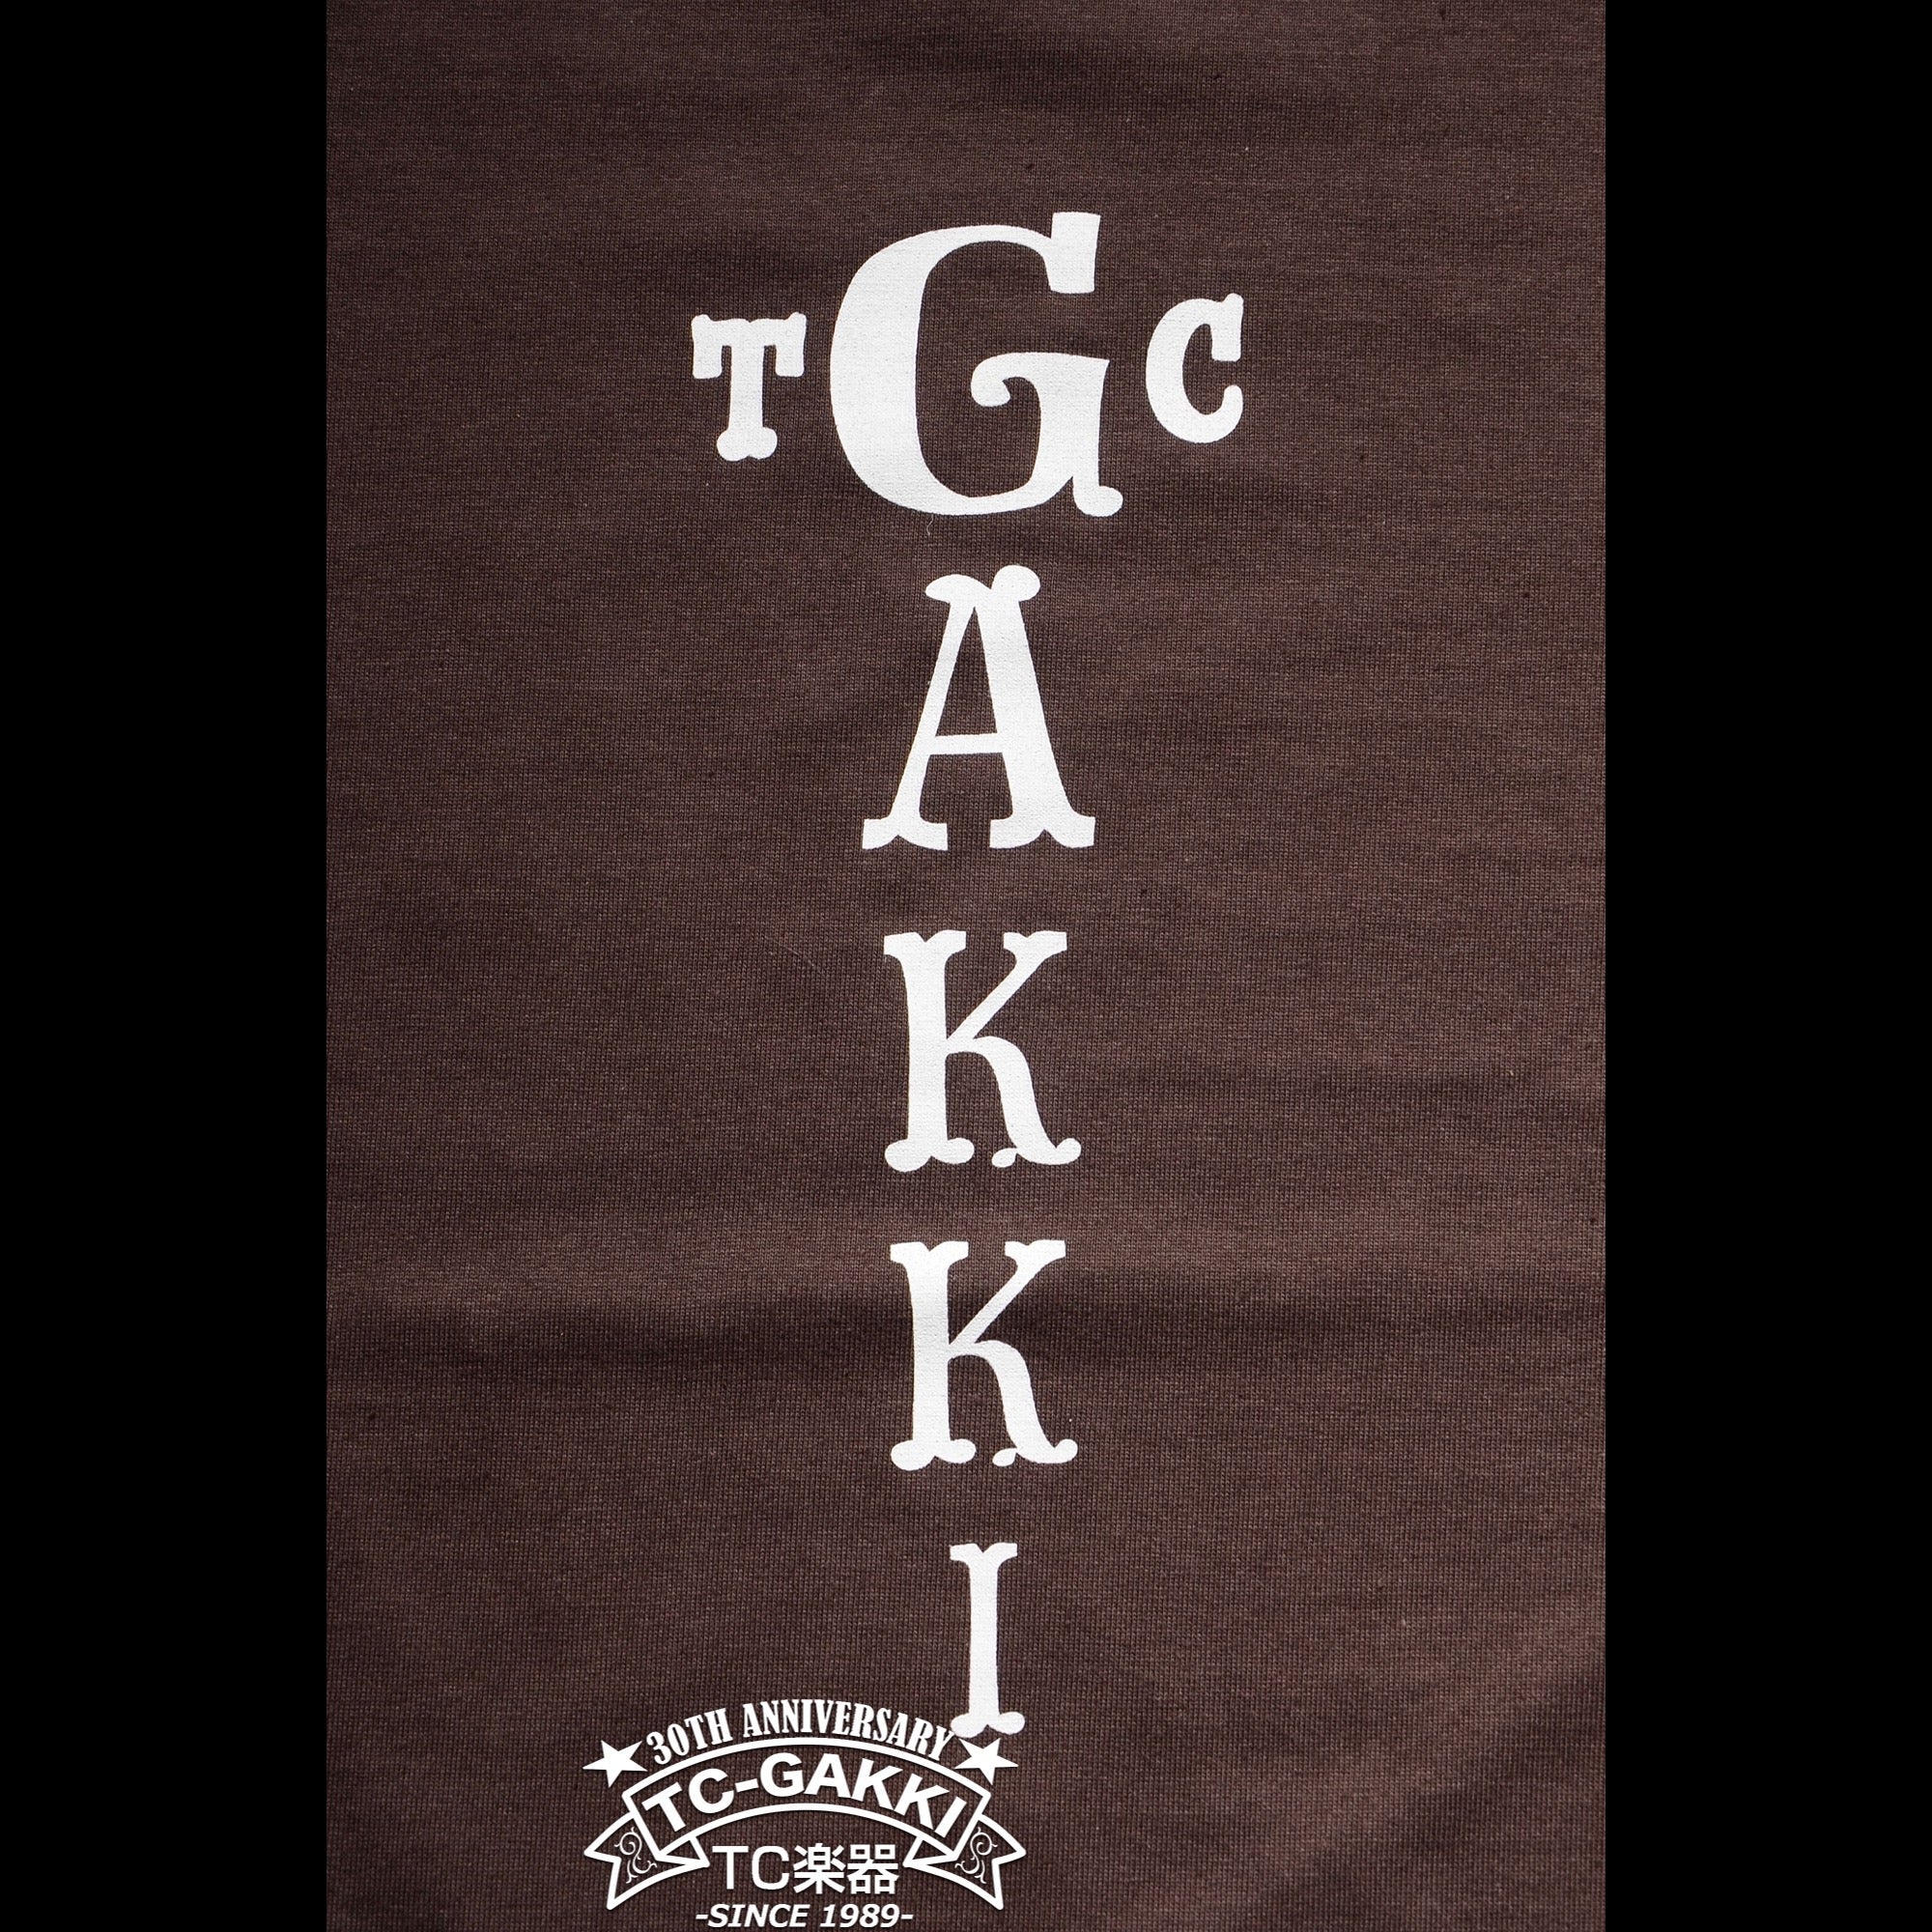 TC楽器 オリジナルTシャツ "縦ロゴ" - TC楽器 - TCGAKKI